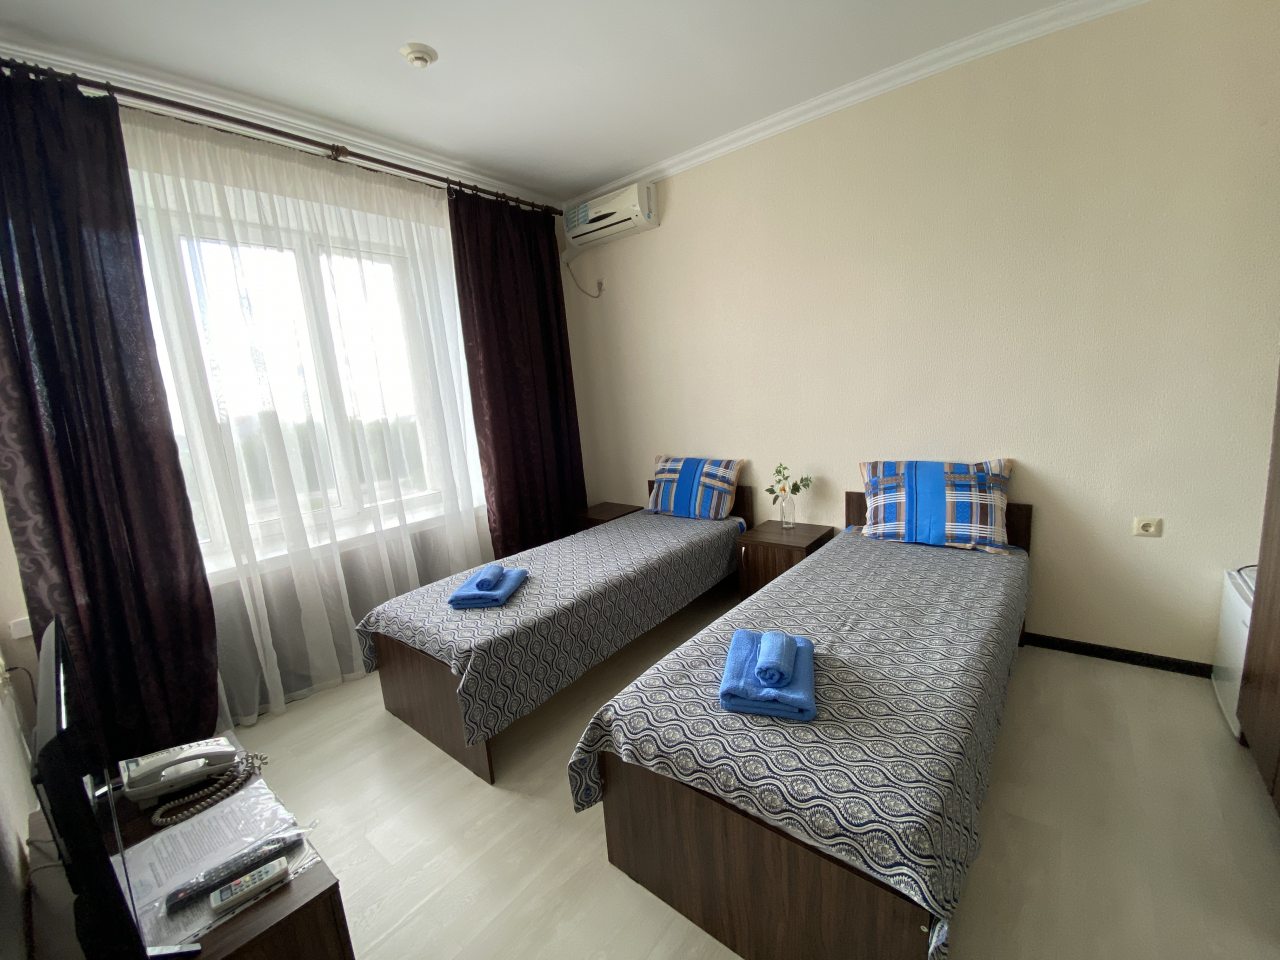 Двухместный (Стандартный двухместный номер с двумя раздельными кроватями) гостиницы Бархат, Самара